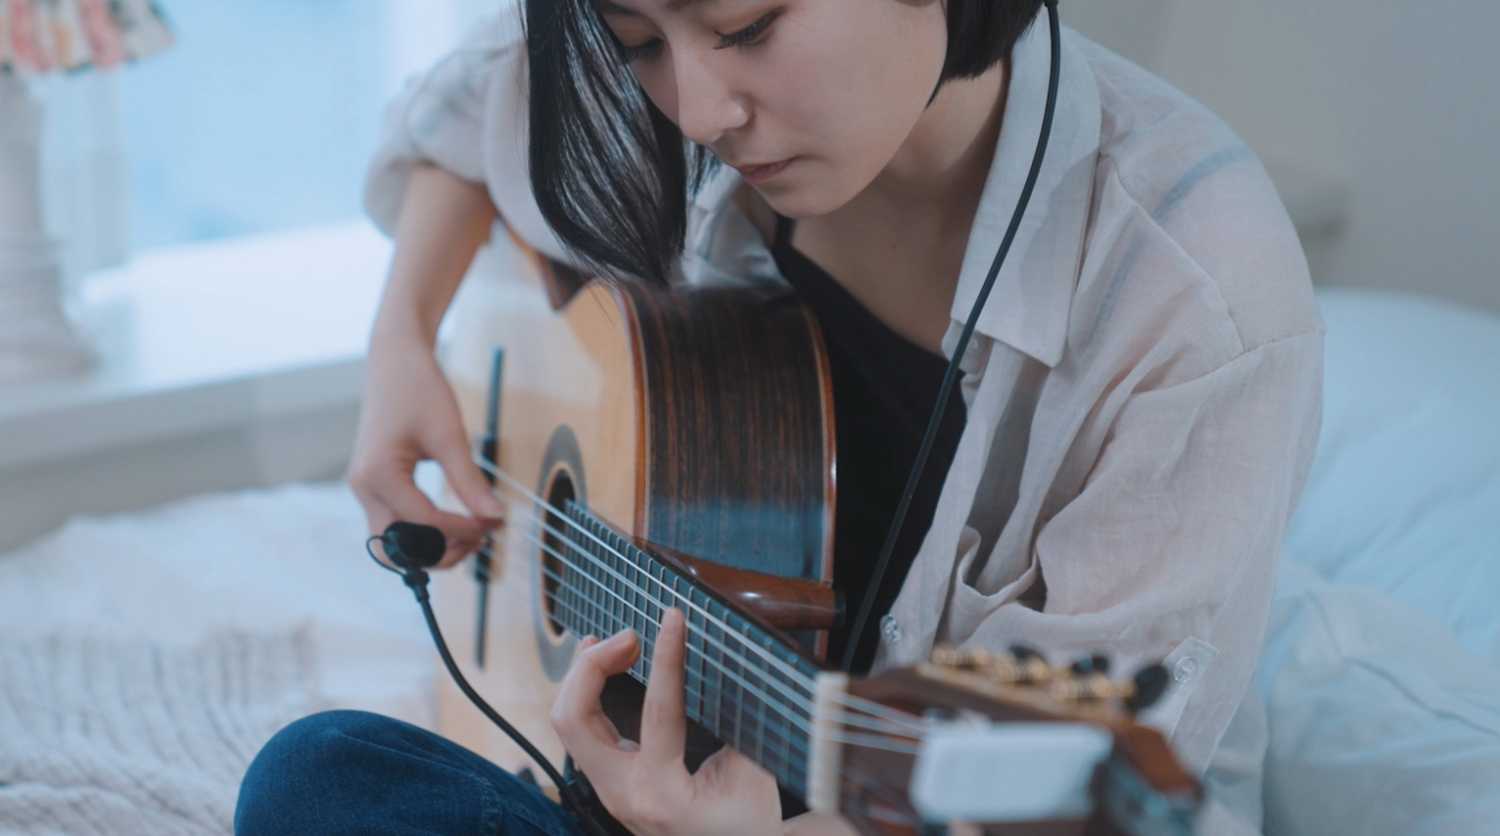 The Neumann MCM was a “game-changer” for guitarist Jang Ha-eun